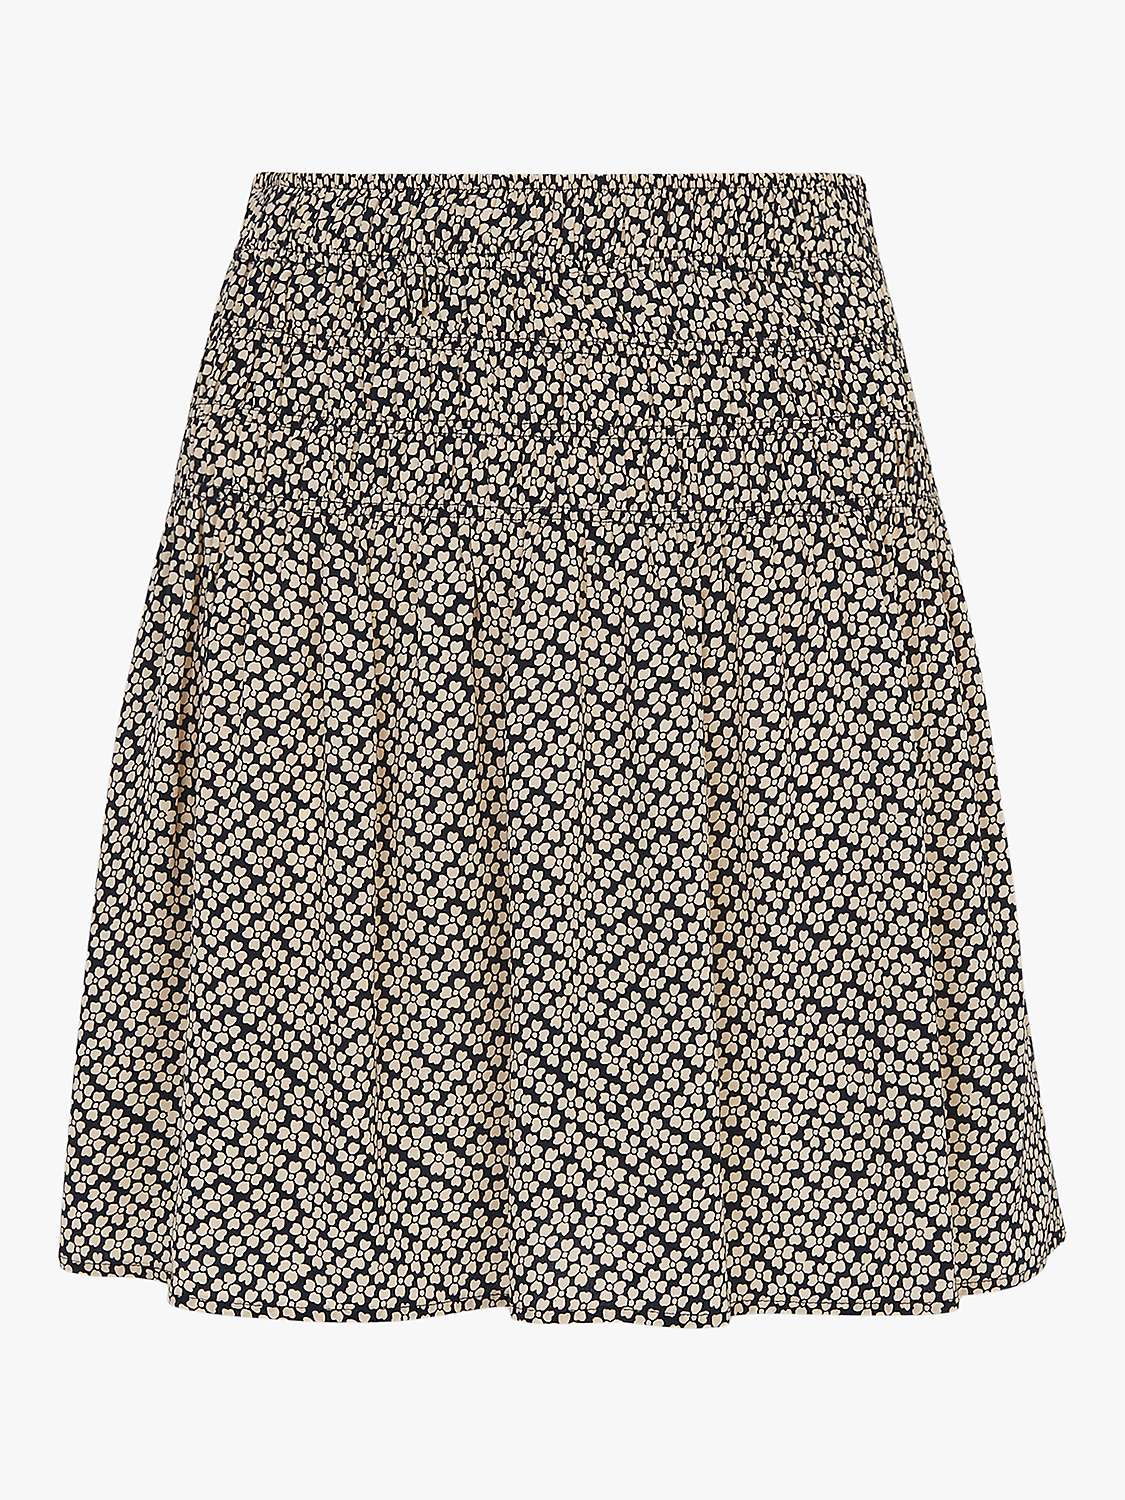 Whistles Clover Print Mini Skirt, Navy/Cream at John Lewis & Partners